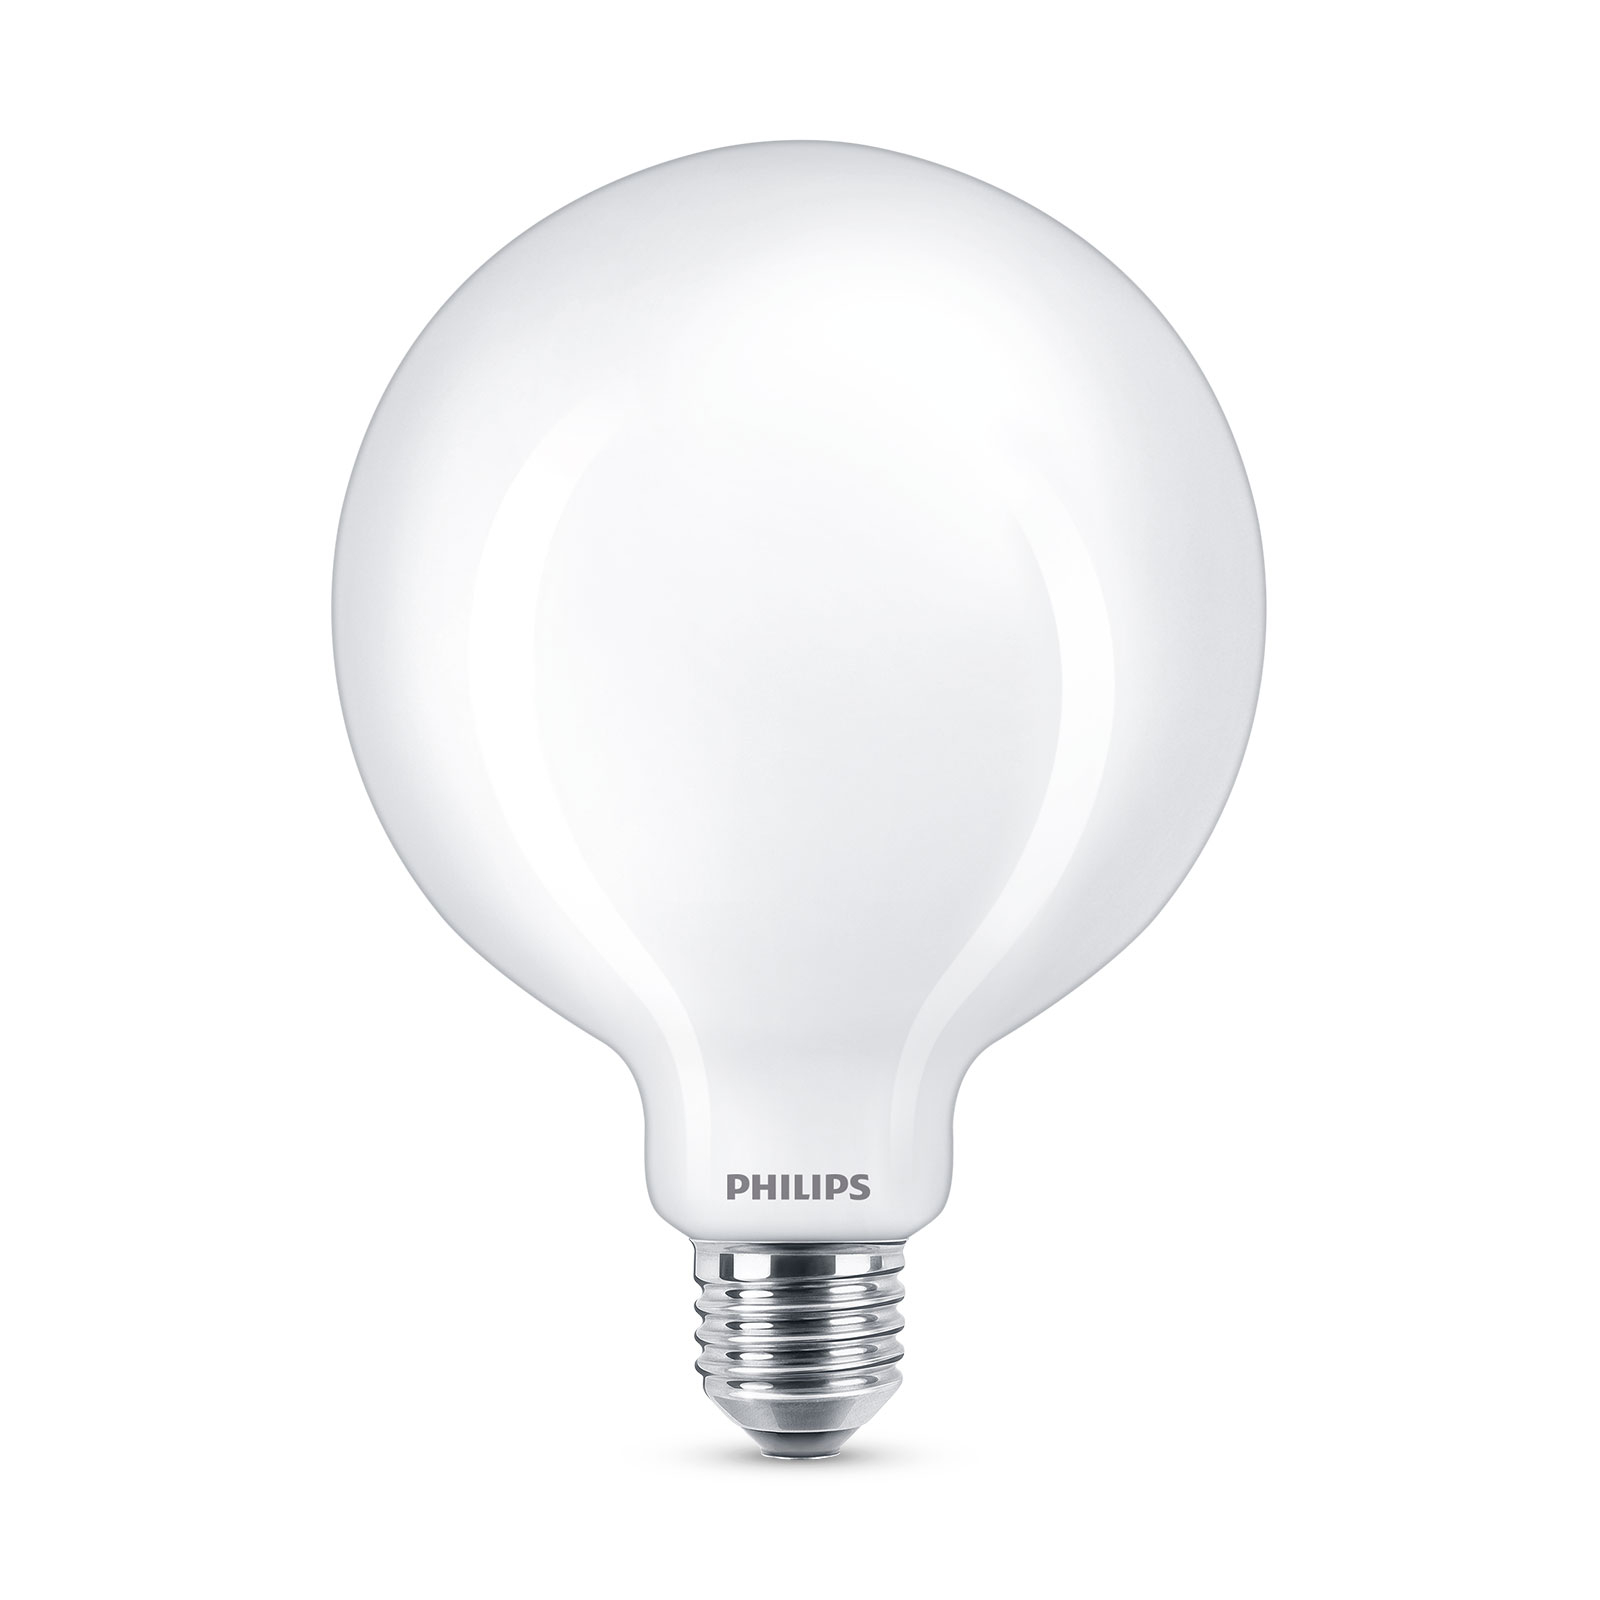 Philips Classic LED bulb E27 G120 7W 2,700K opal